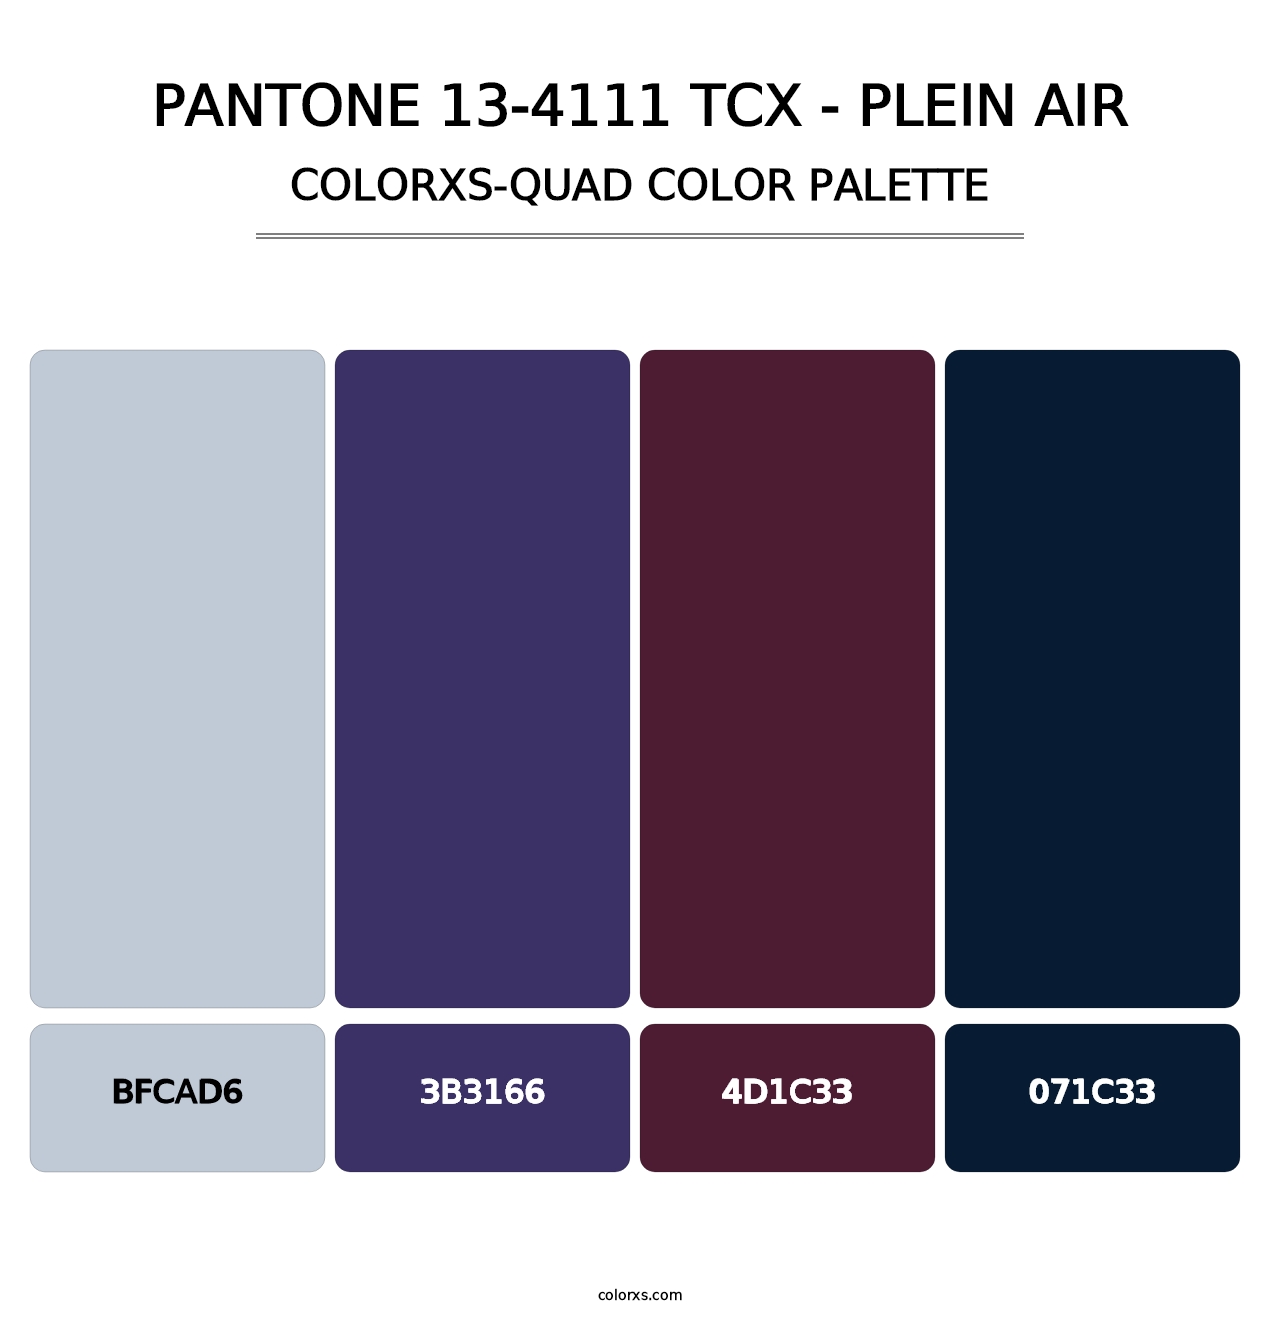 PANTONE 13-4111 TCX - Plein Air - Colorxs Quad Palette